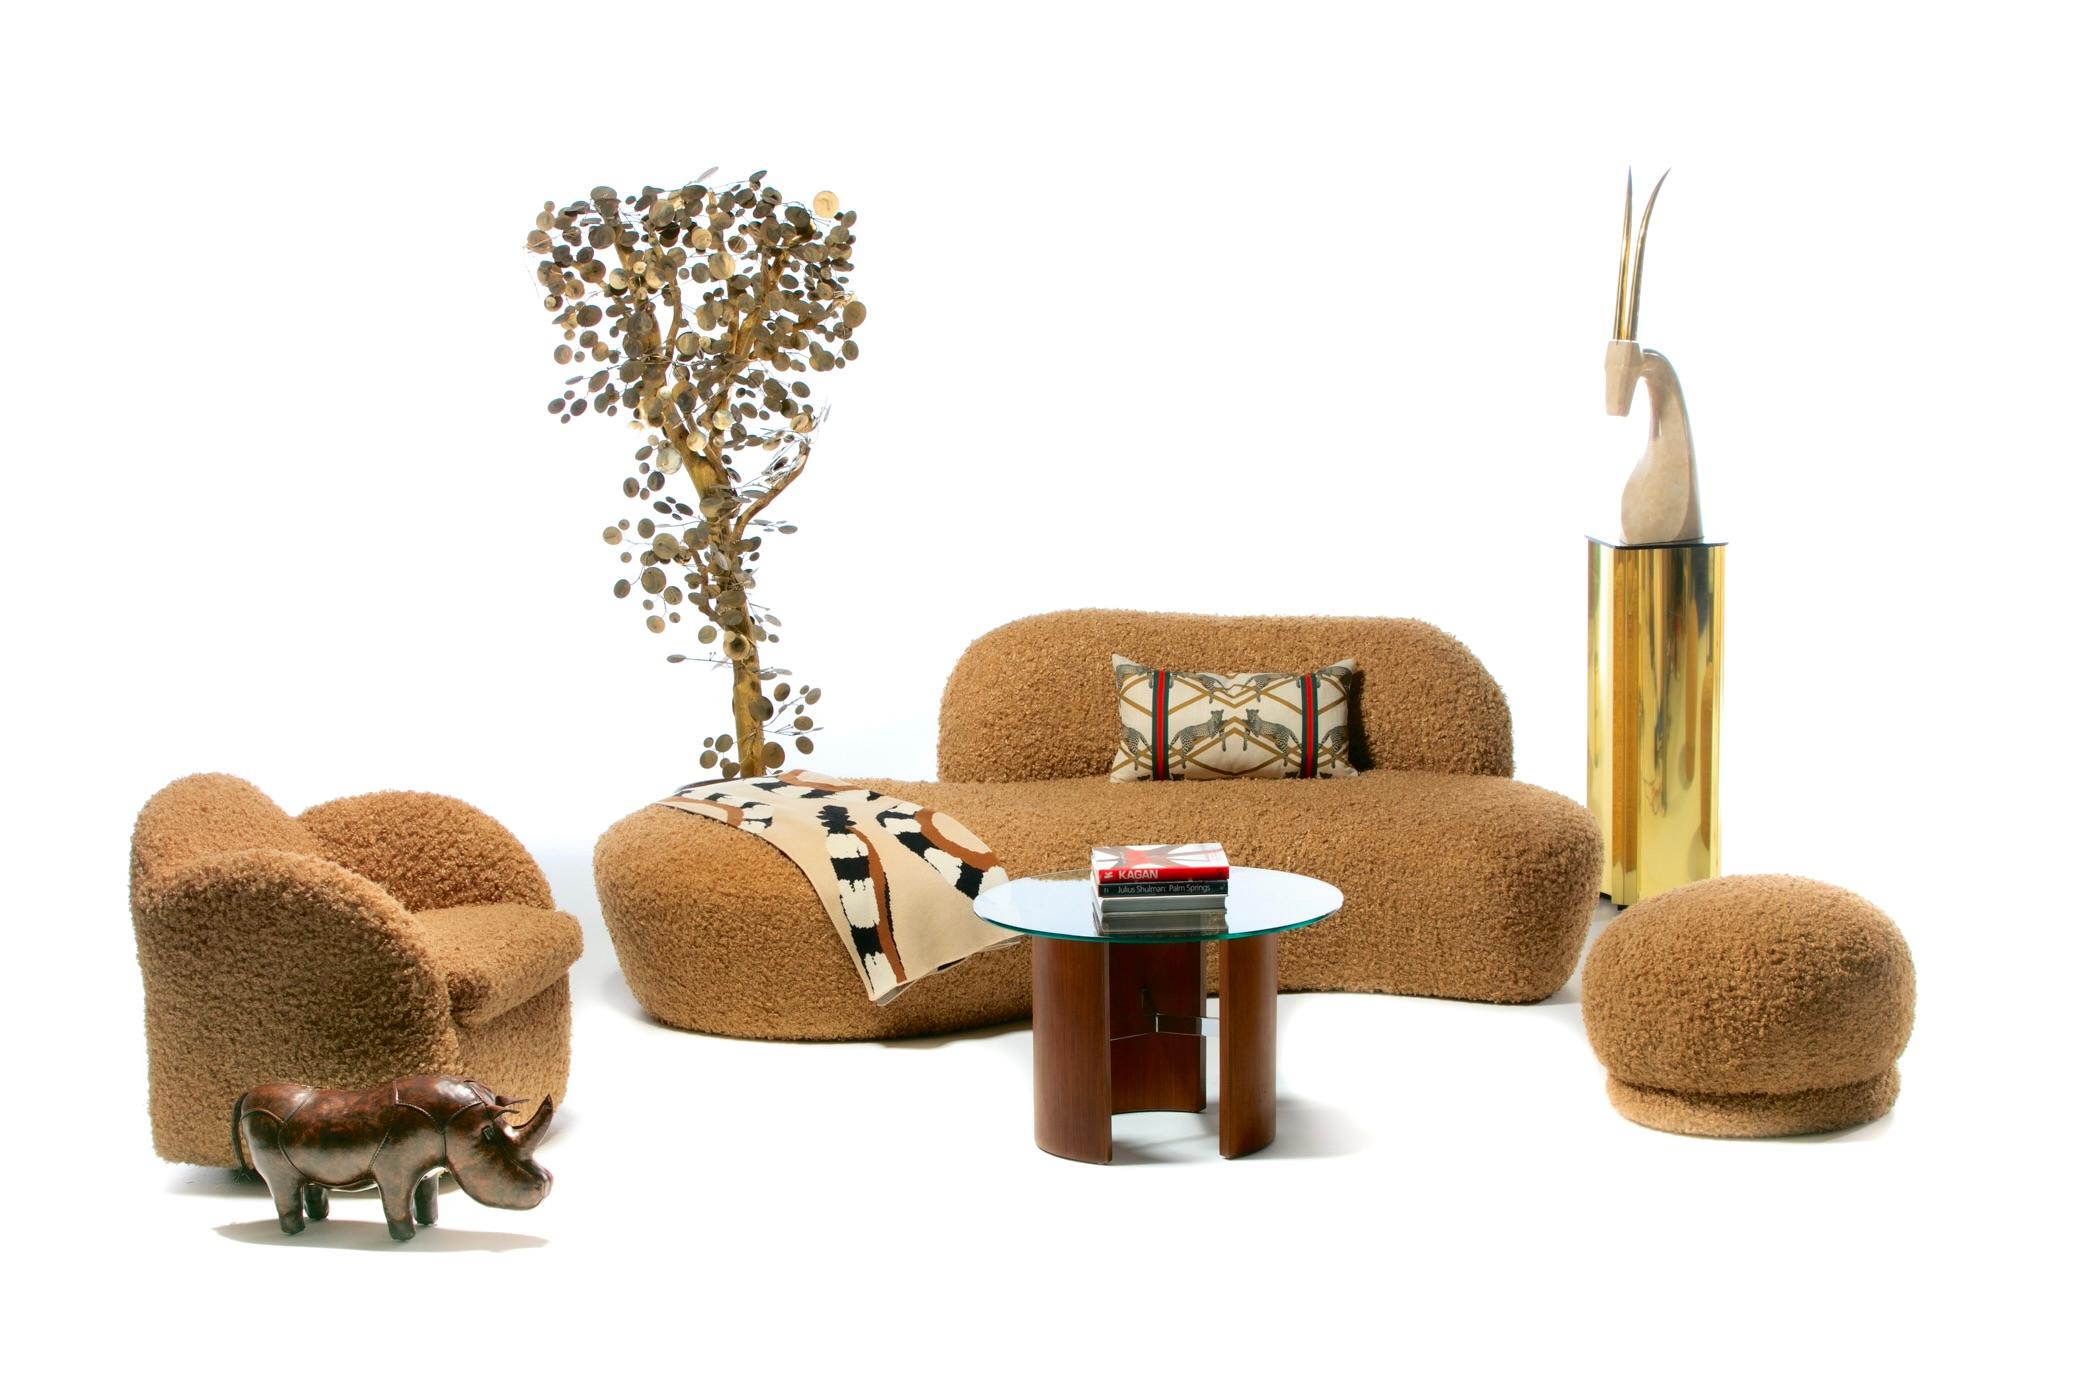 Paire de fauteuils de salon Directional des années 1990, nouvellement recouverts d'un luxueux tissu teddy bear de couleur camel. Le style des chaises rappelle celui de Michael Wolk. Tous deux ont conçu des meubles pour Directional. Une élégance